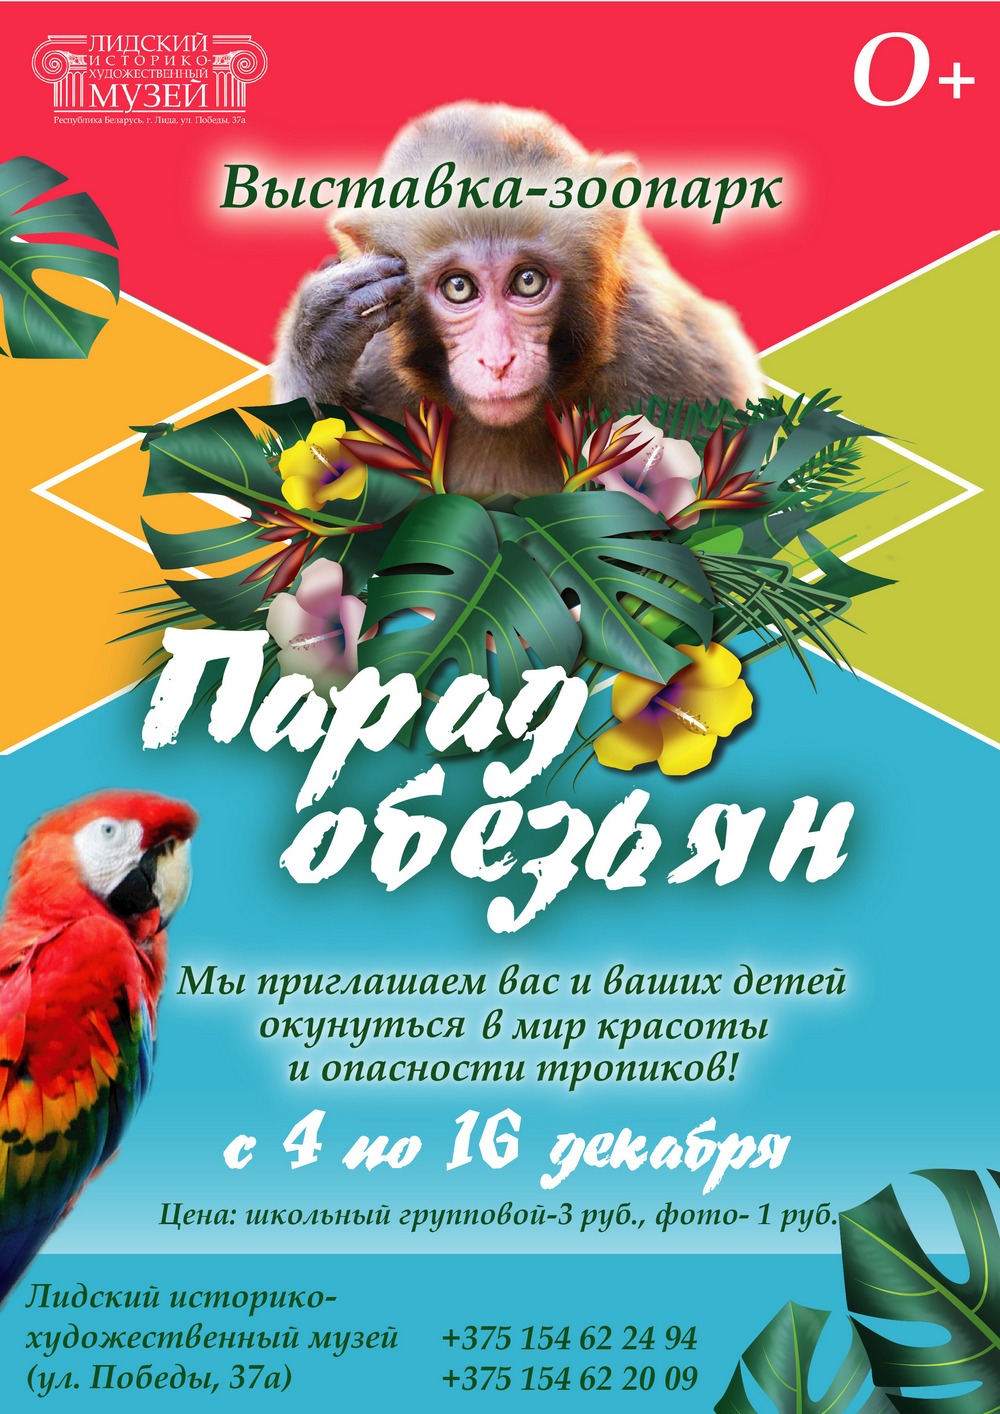 Лидский историко-художественный музей приглашает: "Парад обезьян"